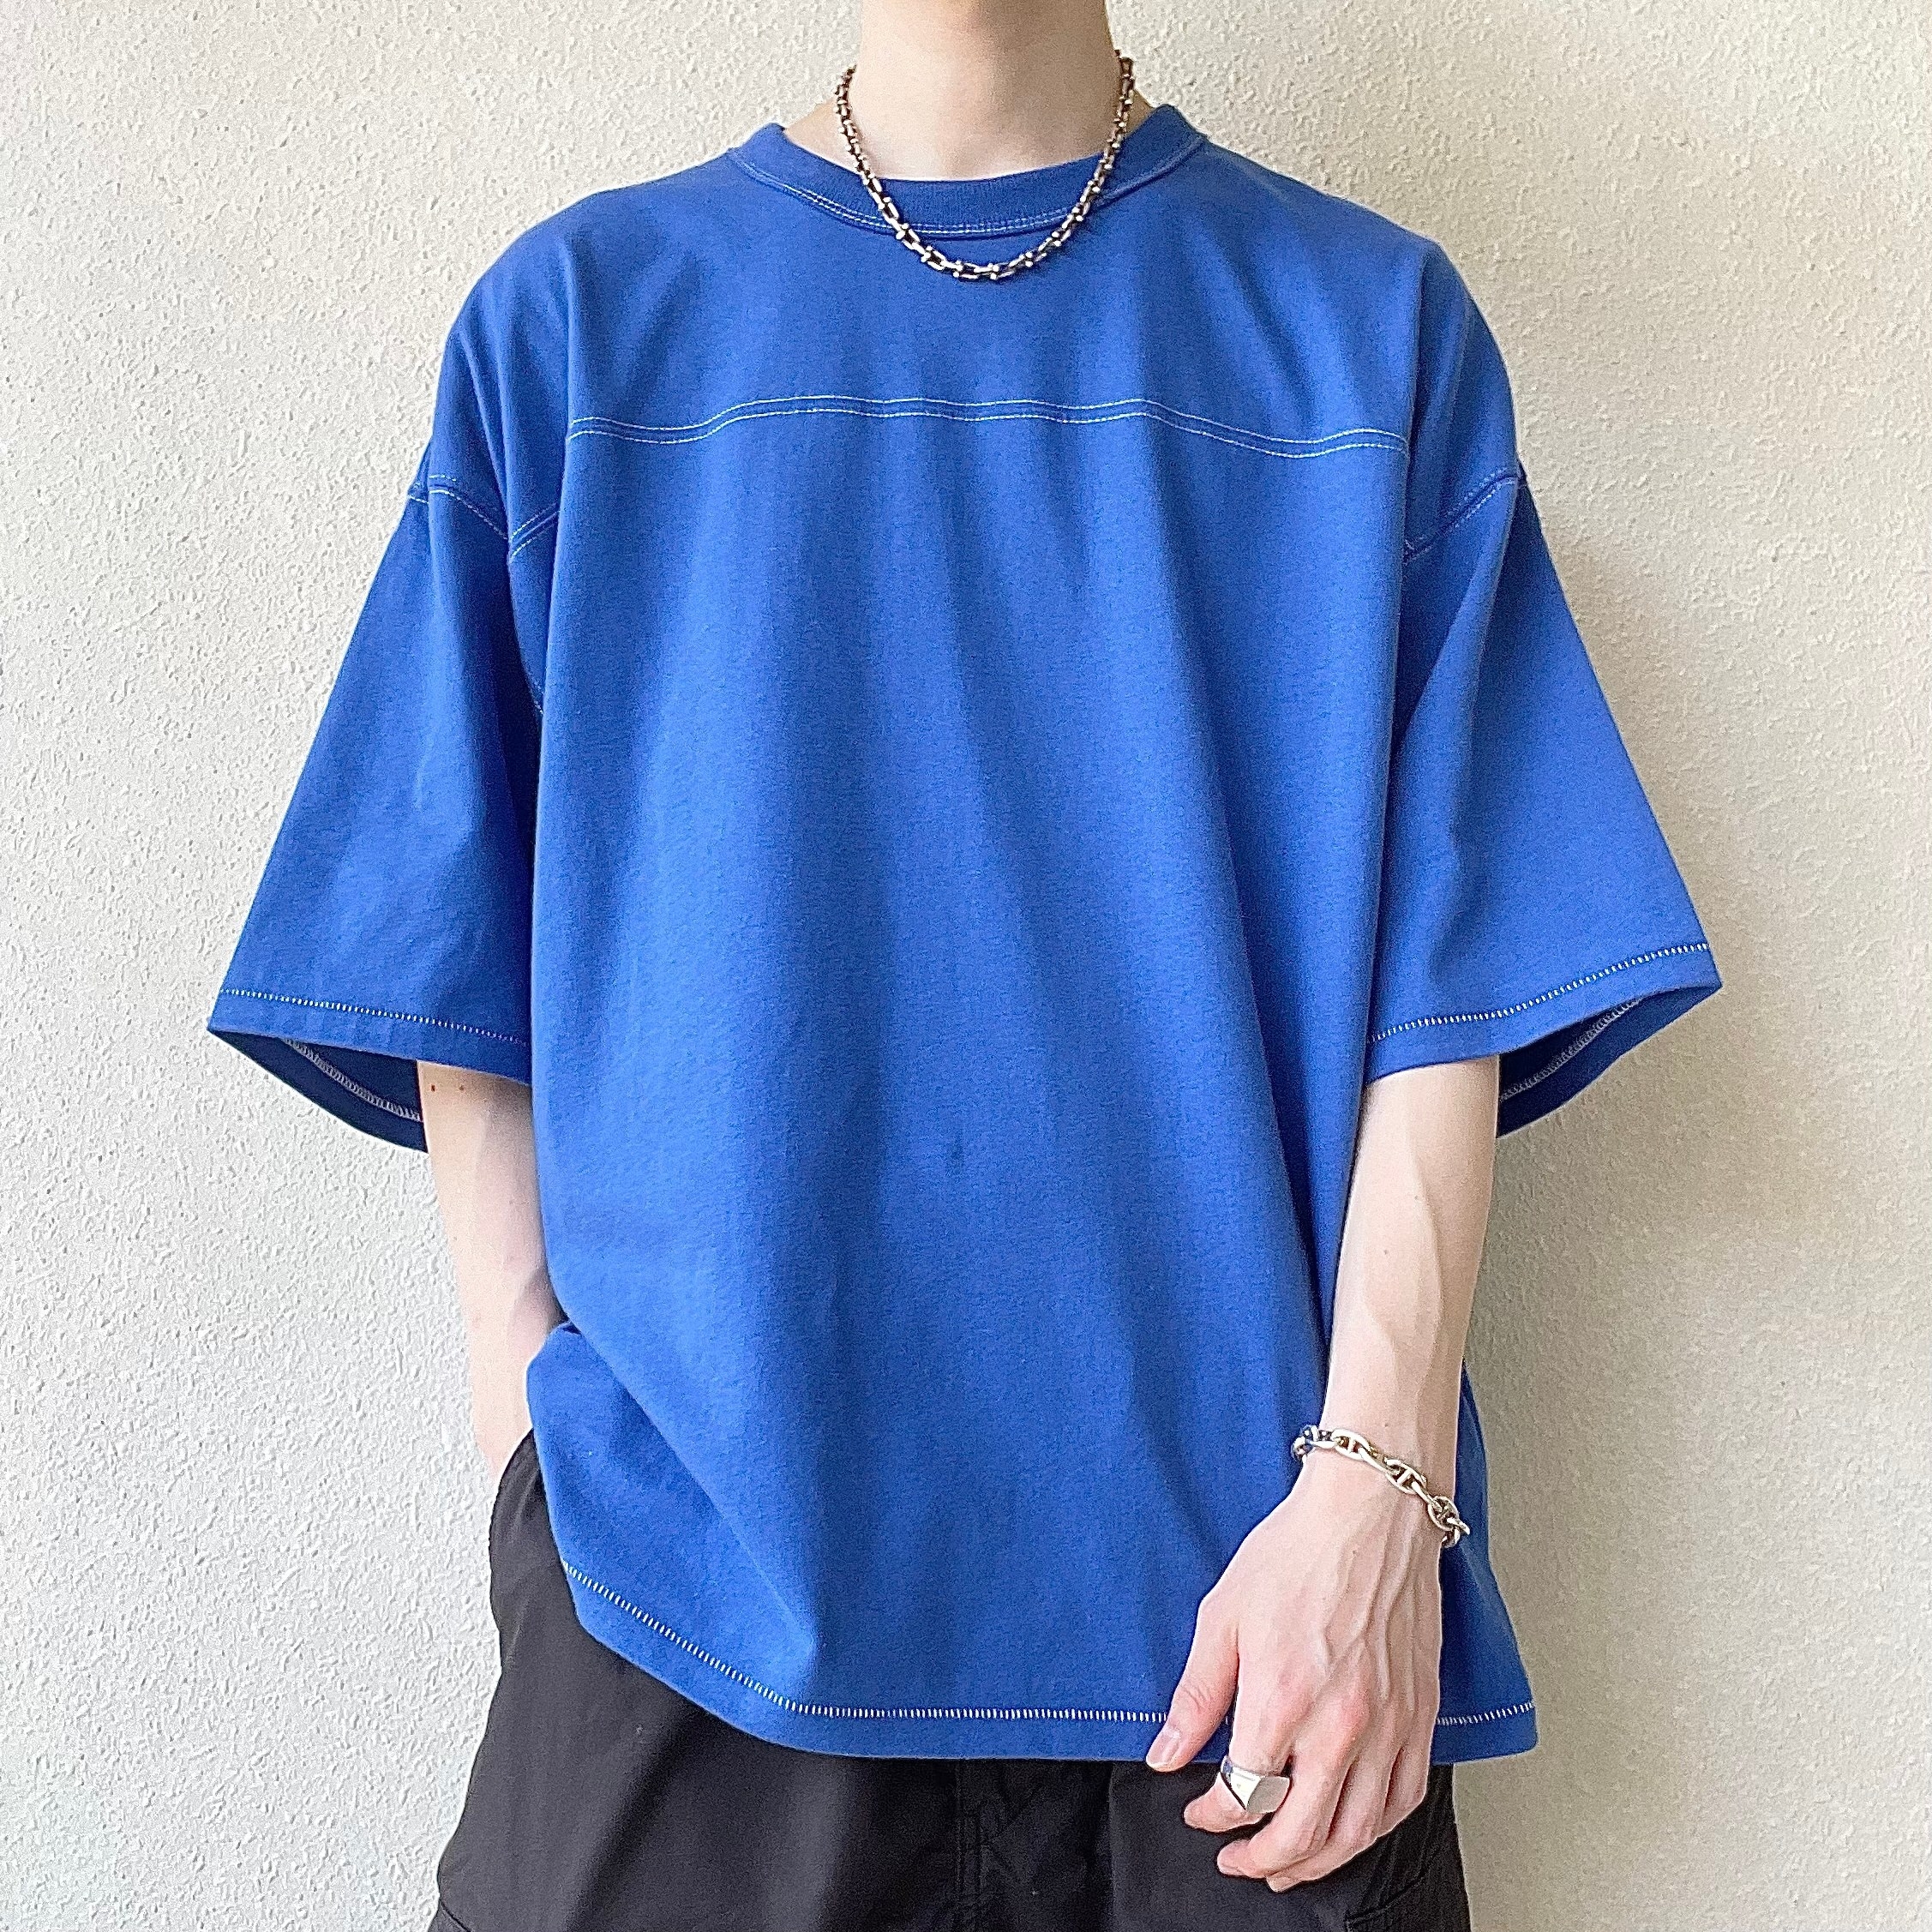 GU（ジーユー）の新作メンズアイテム「フットボールワイドフィットT（5分袖）（ステッチ）」色鮮やかなブルーのTシャツで夏コーデにおすすめ